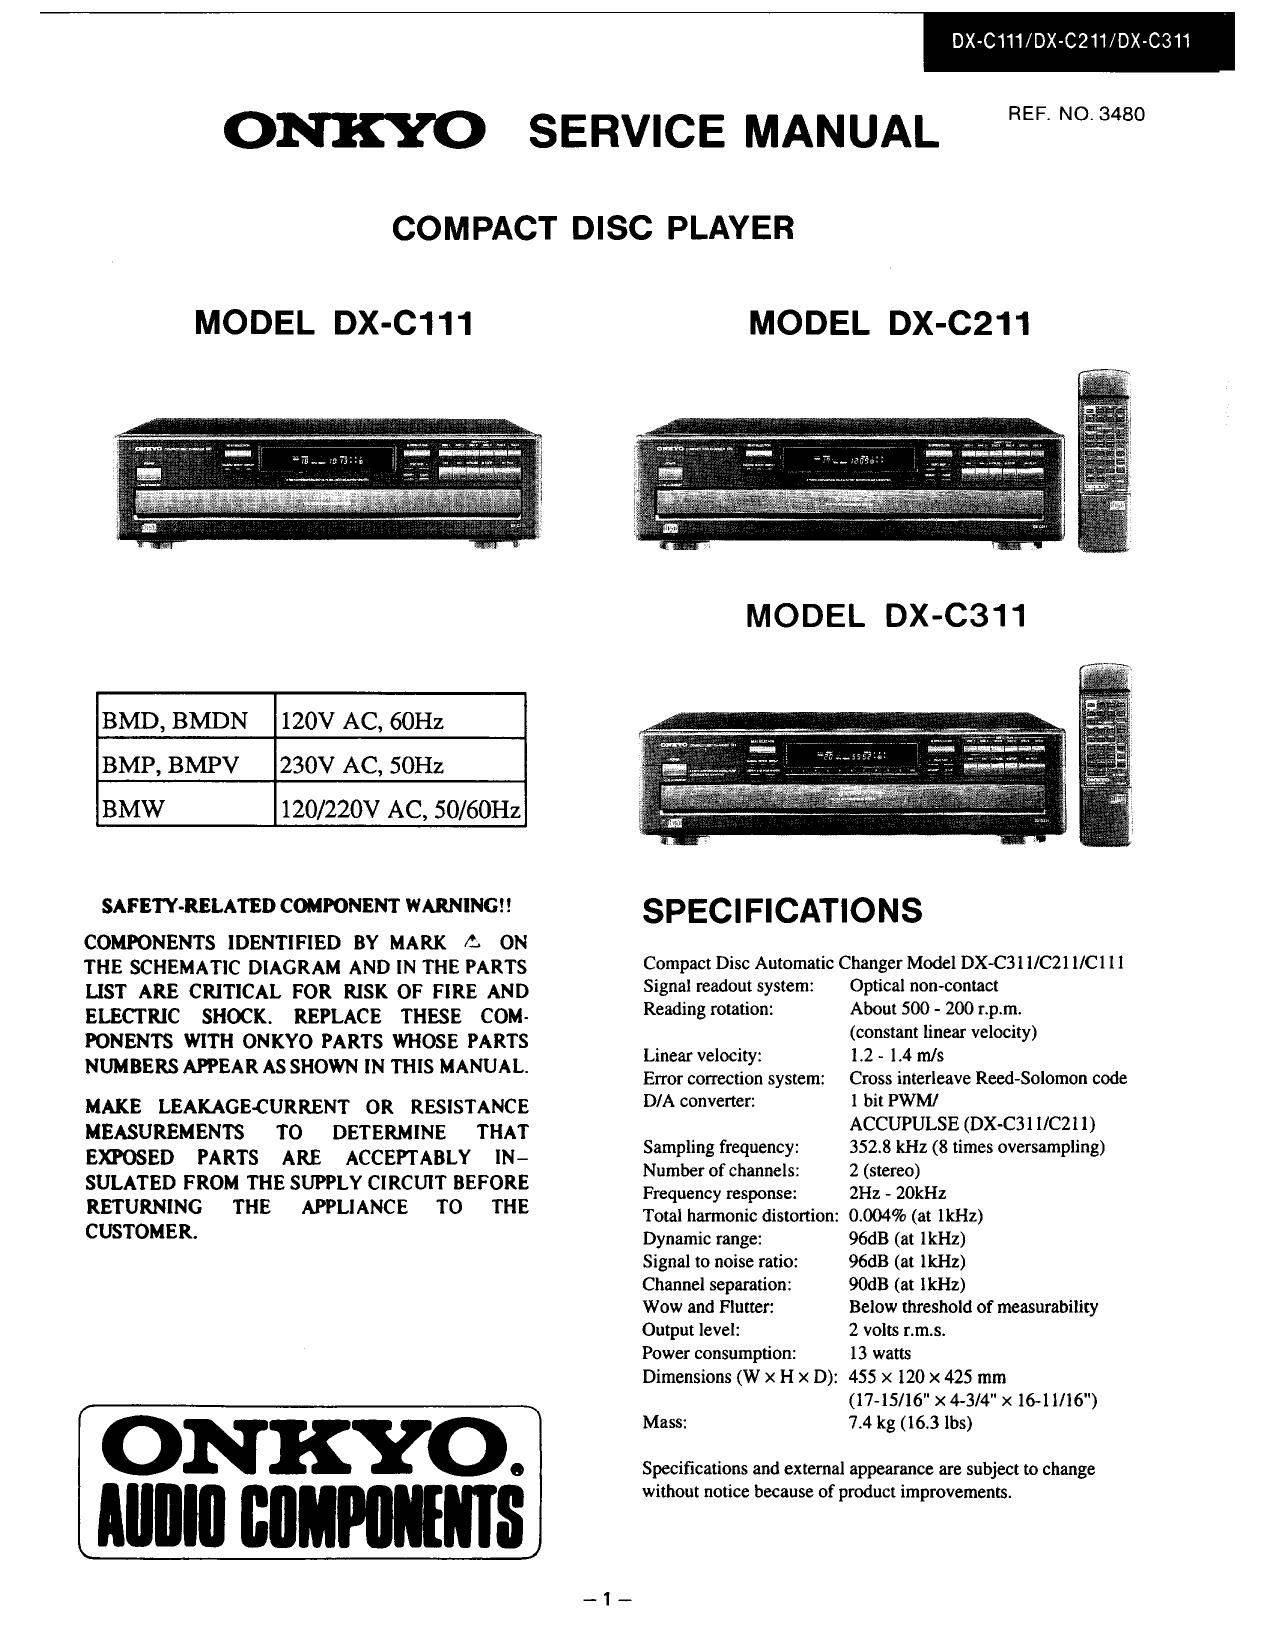 Onkyo DX-C211